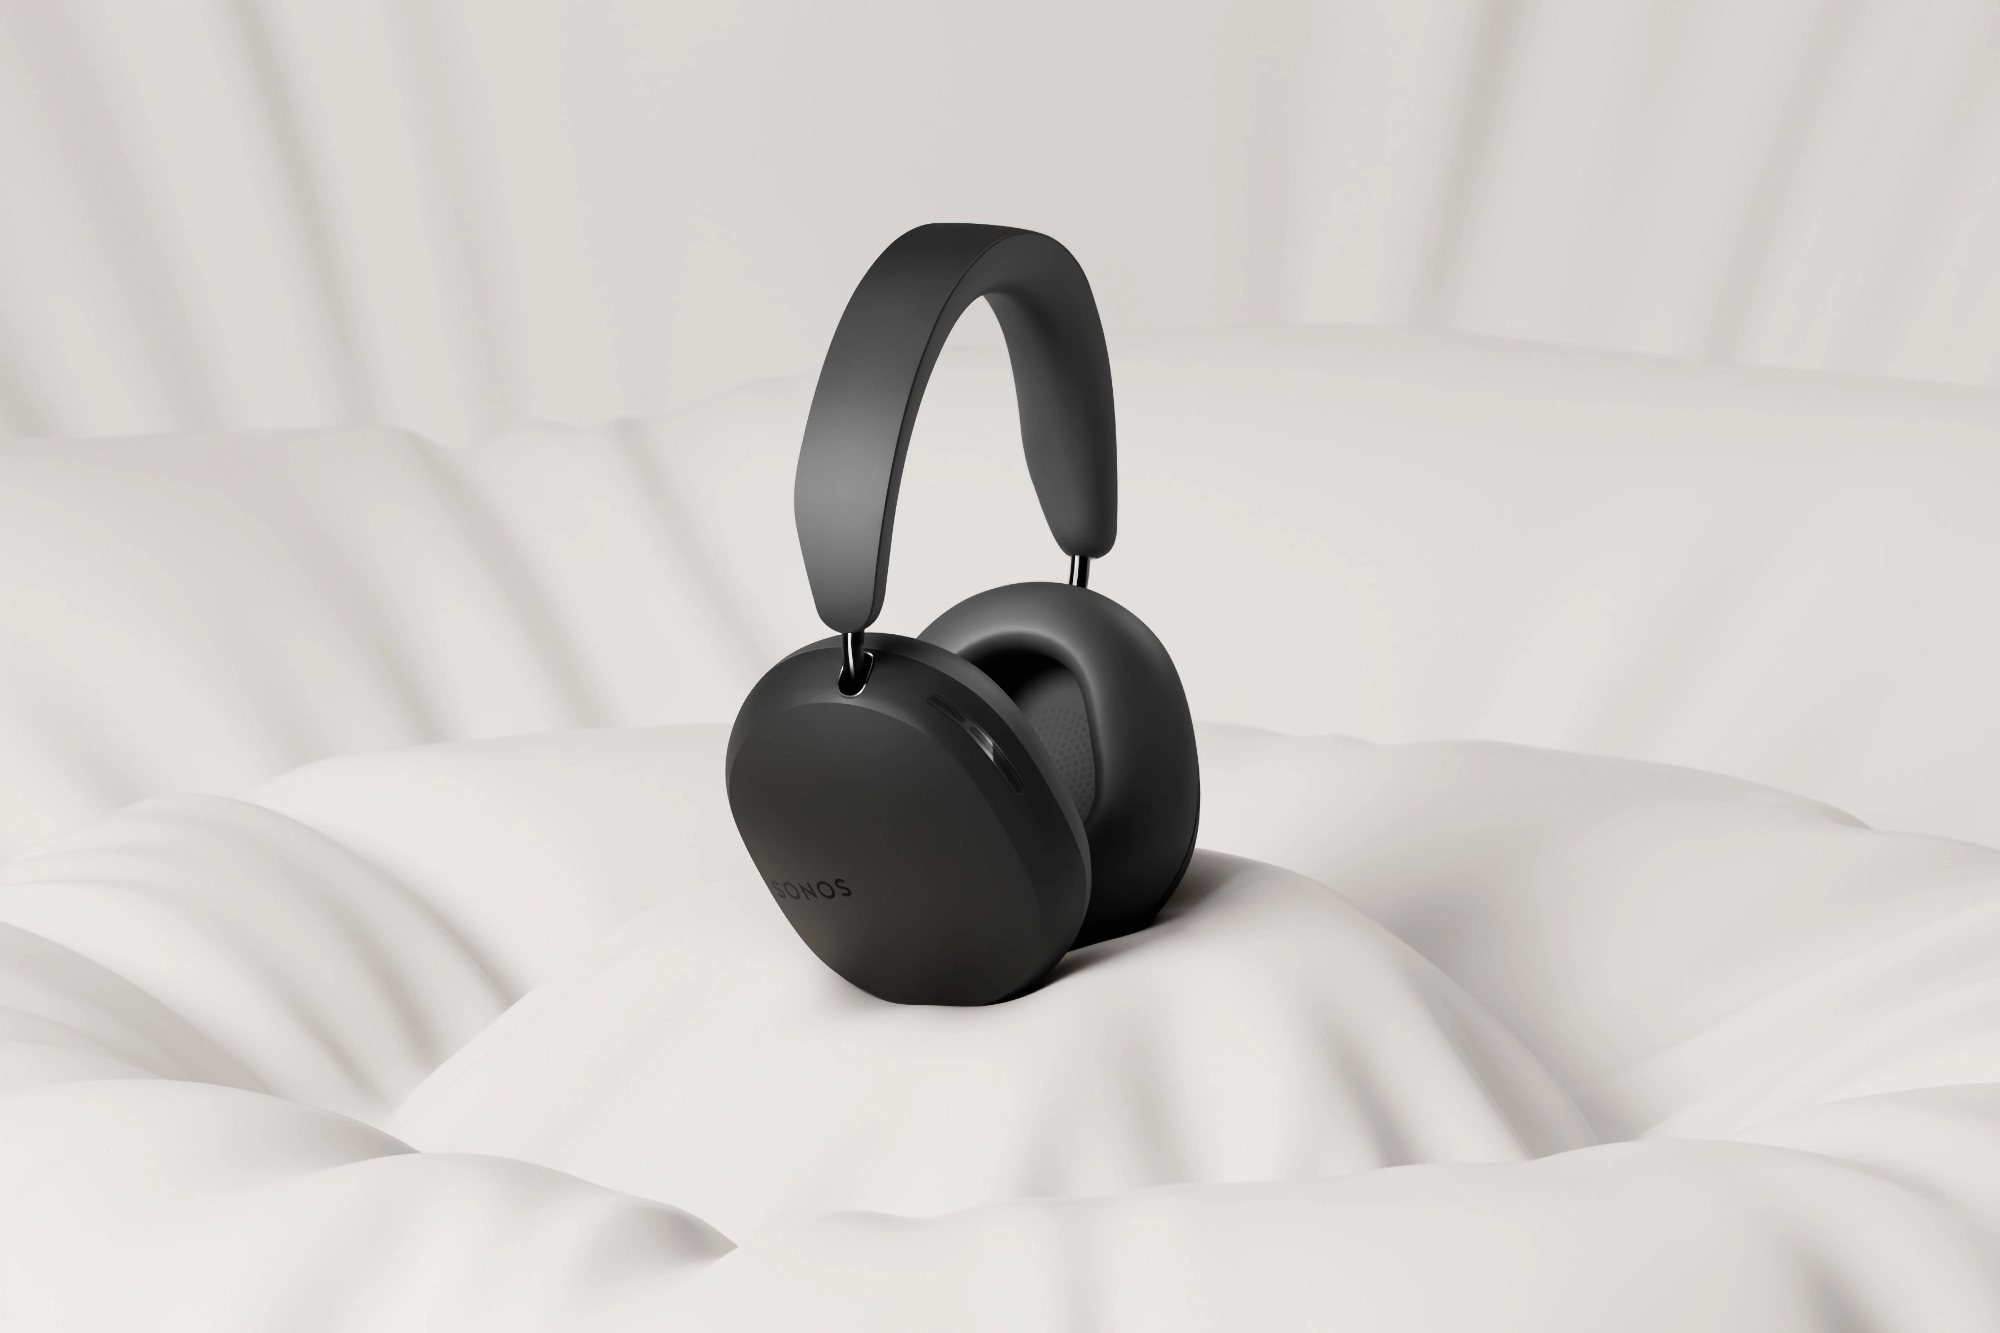 Sonos hat den Ace vorgestellt, um mit den AirPods Max von Apple zu konkurrieren: der erste kabellose Kopfhörer der Marke für 449 Dollar